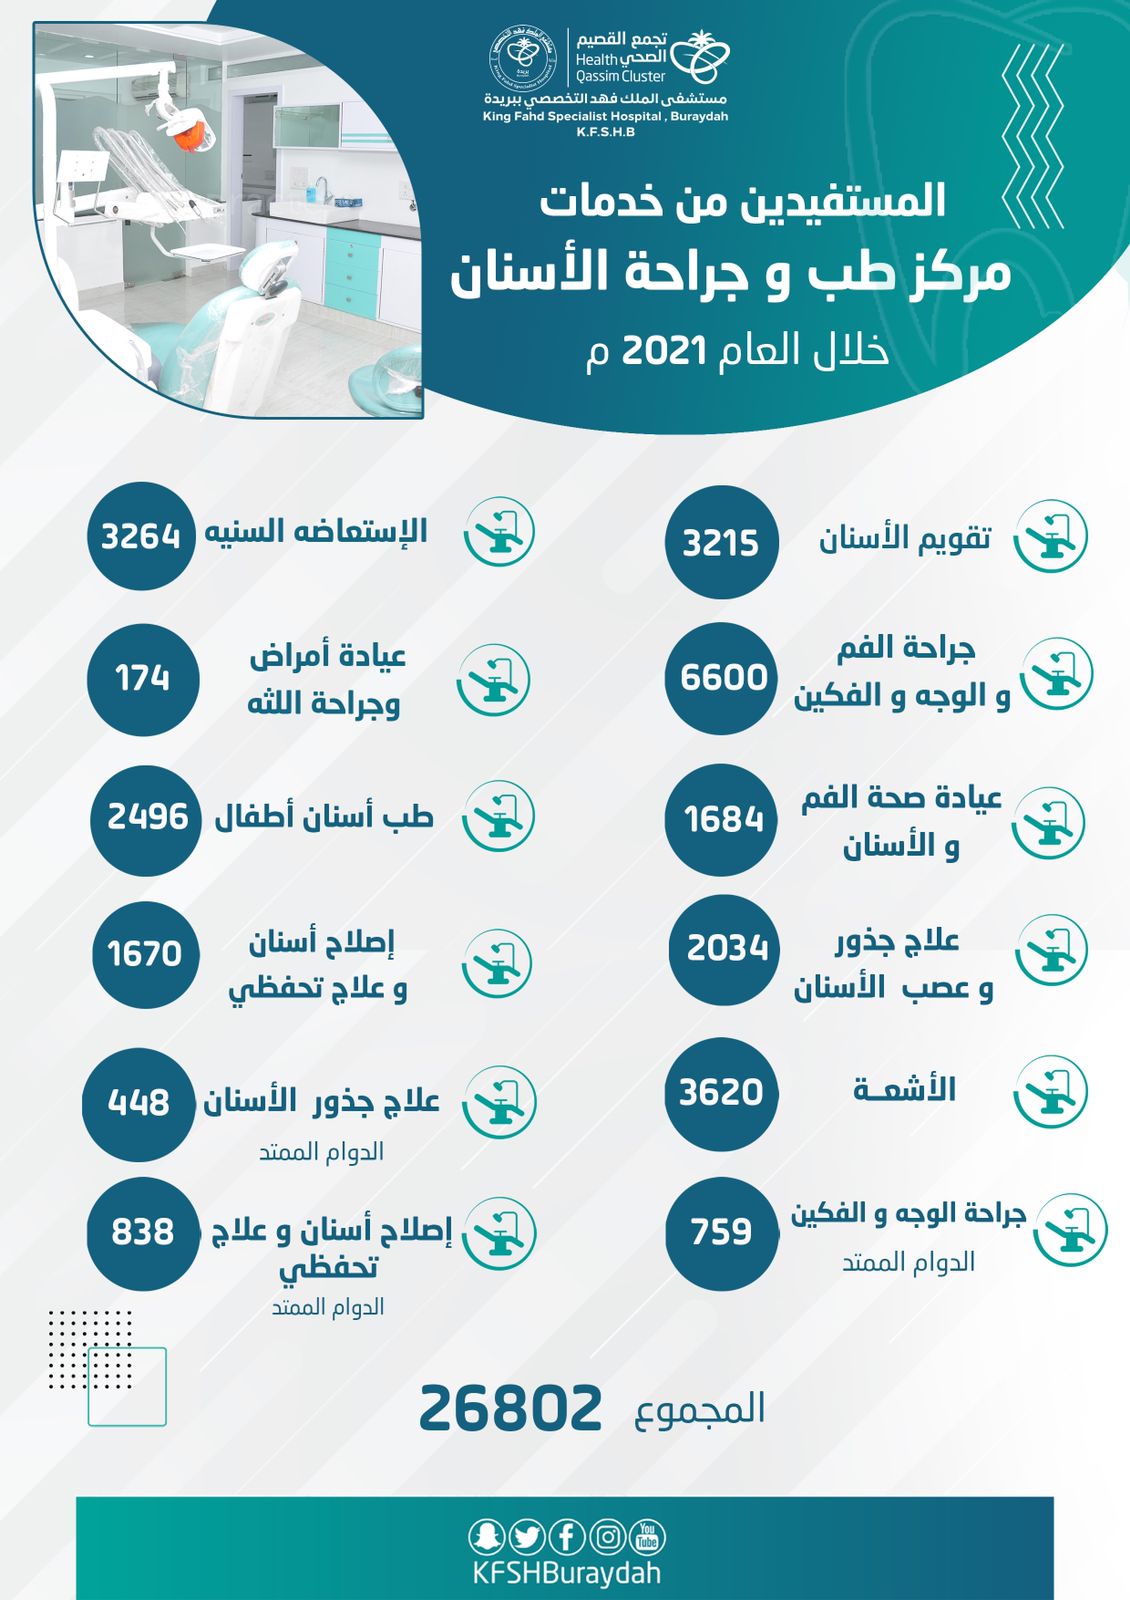 مركز طب الاسنان في #تخصصي_بريدة يستقبل أكثر من 26 ألف حالة خلال العام 2021 م